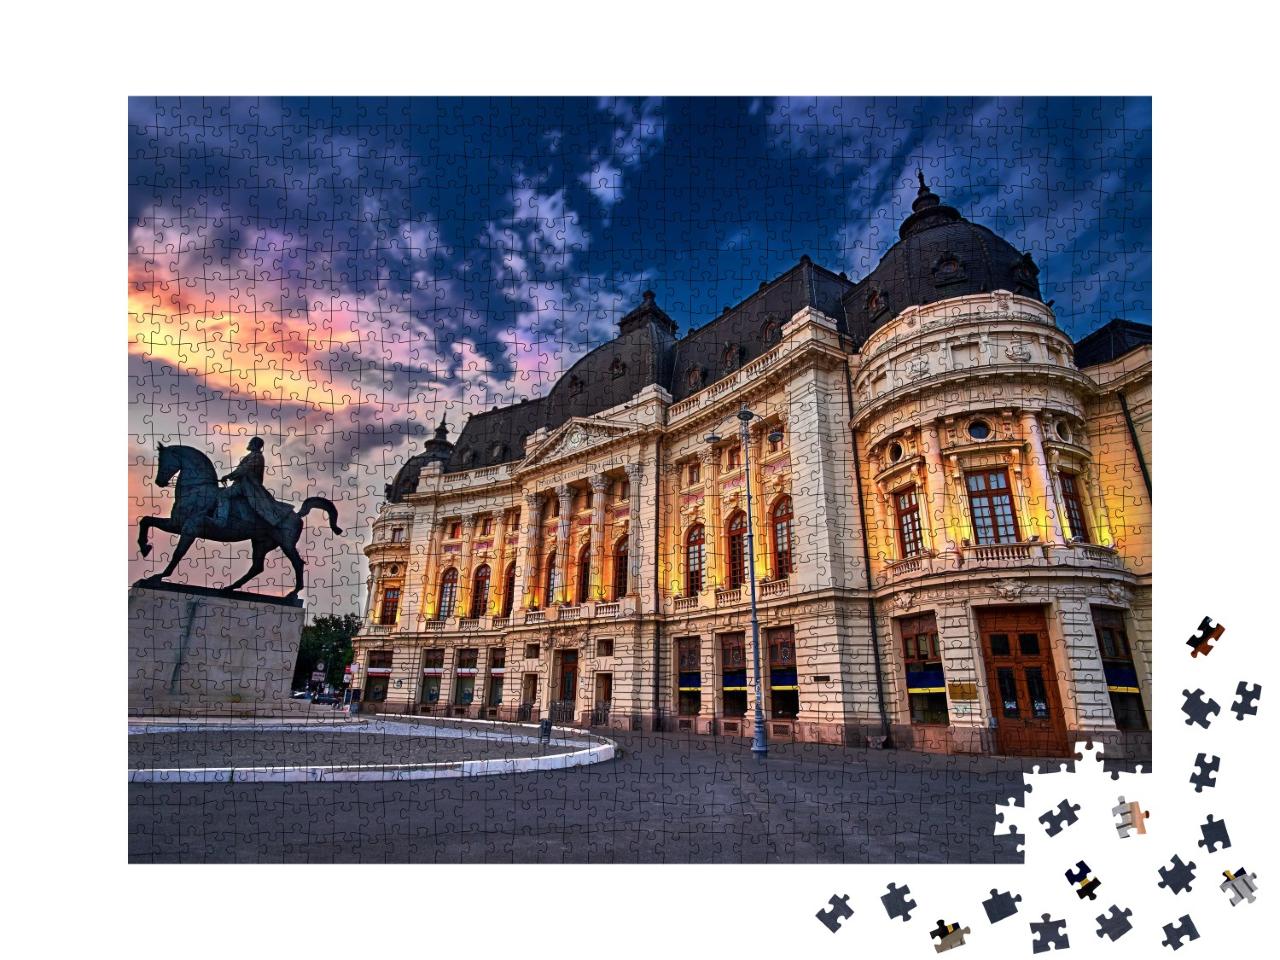 Puzzle de 1000 pièces « Bucarest au coucher du soleil. Calea Victoriei, Bibliothèque nationale »